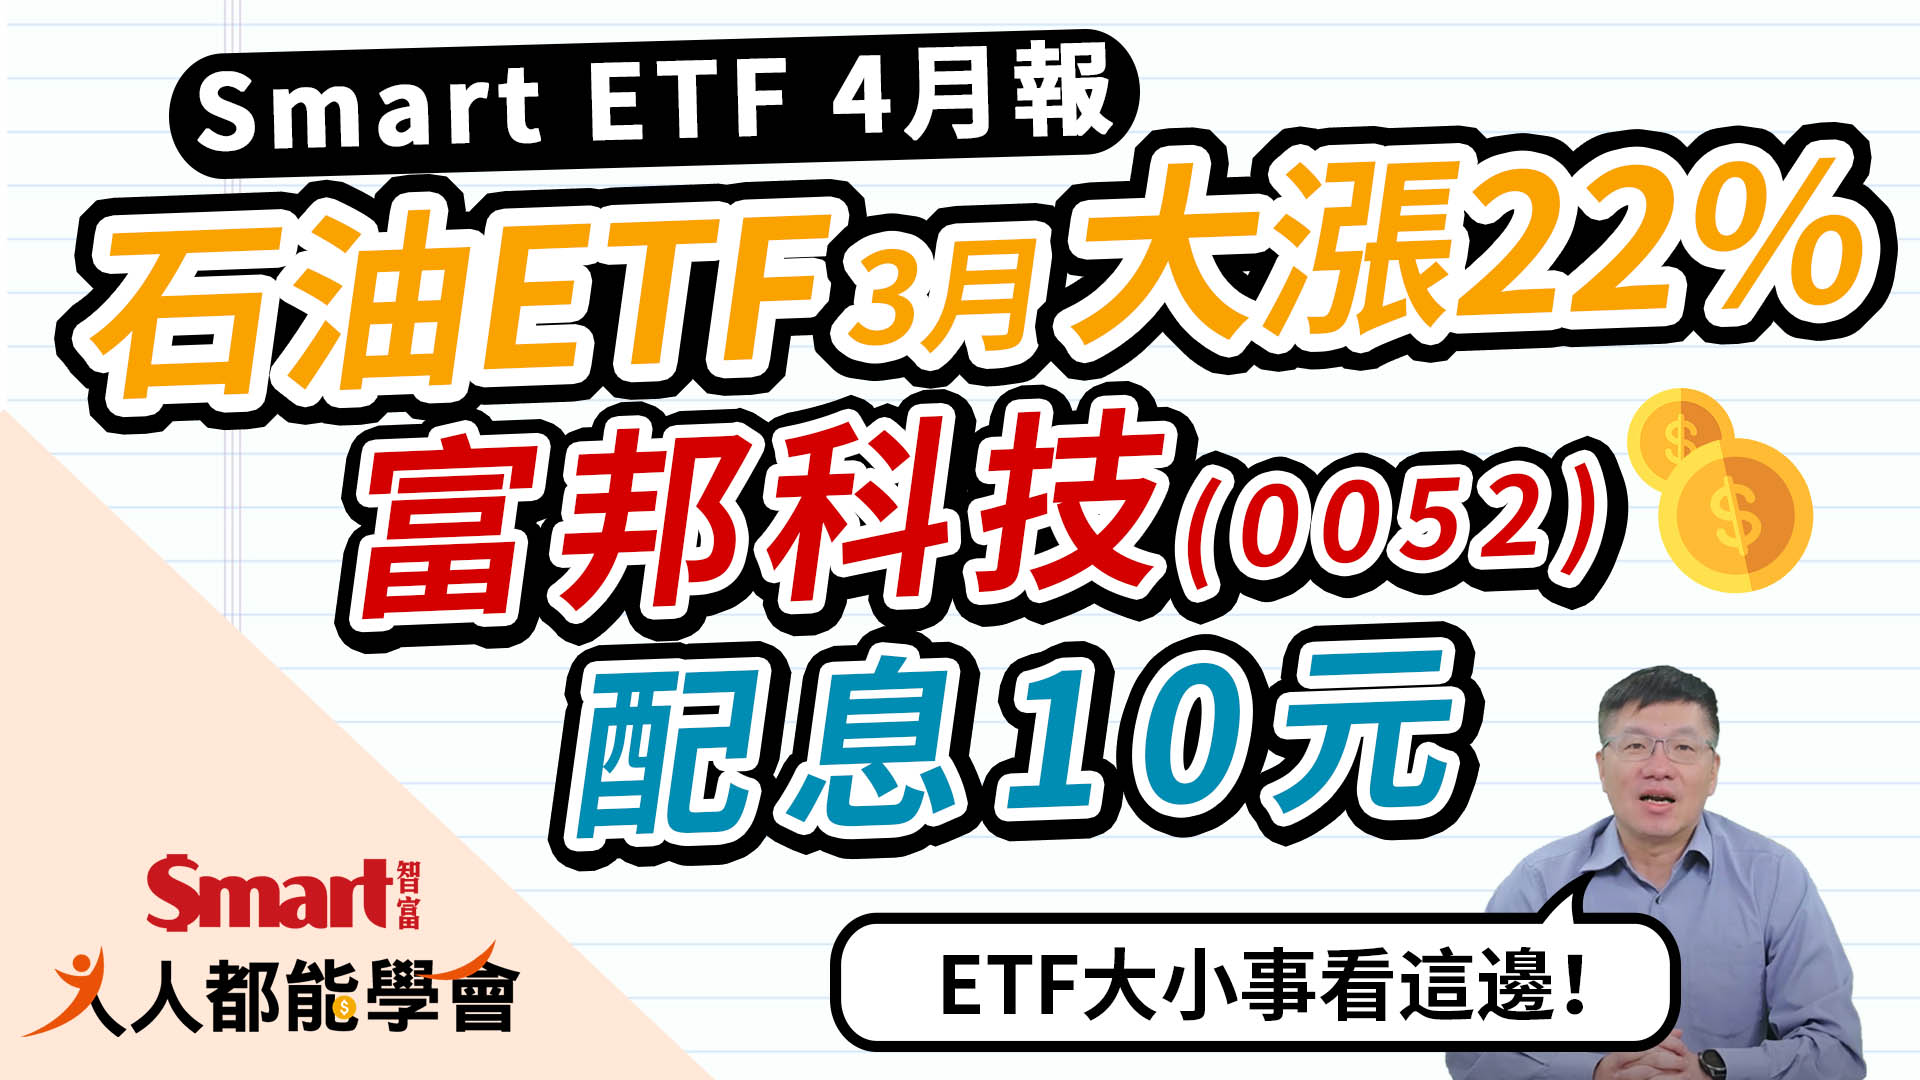 影片》石油ETF3月大漲22%、富邦科技配息10元，ETF大小事、除息資訊就看「Smart ETF 4月報」-Smart智富ETF研究室